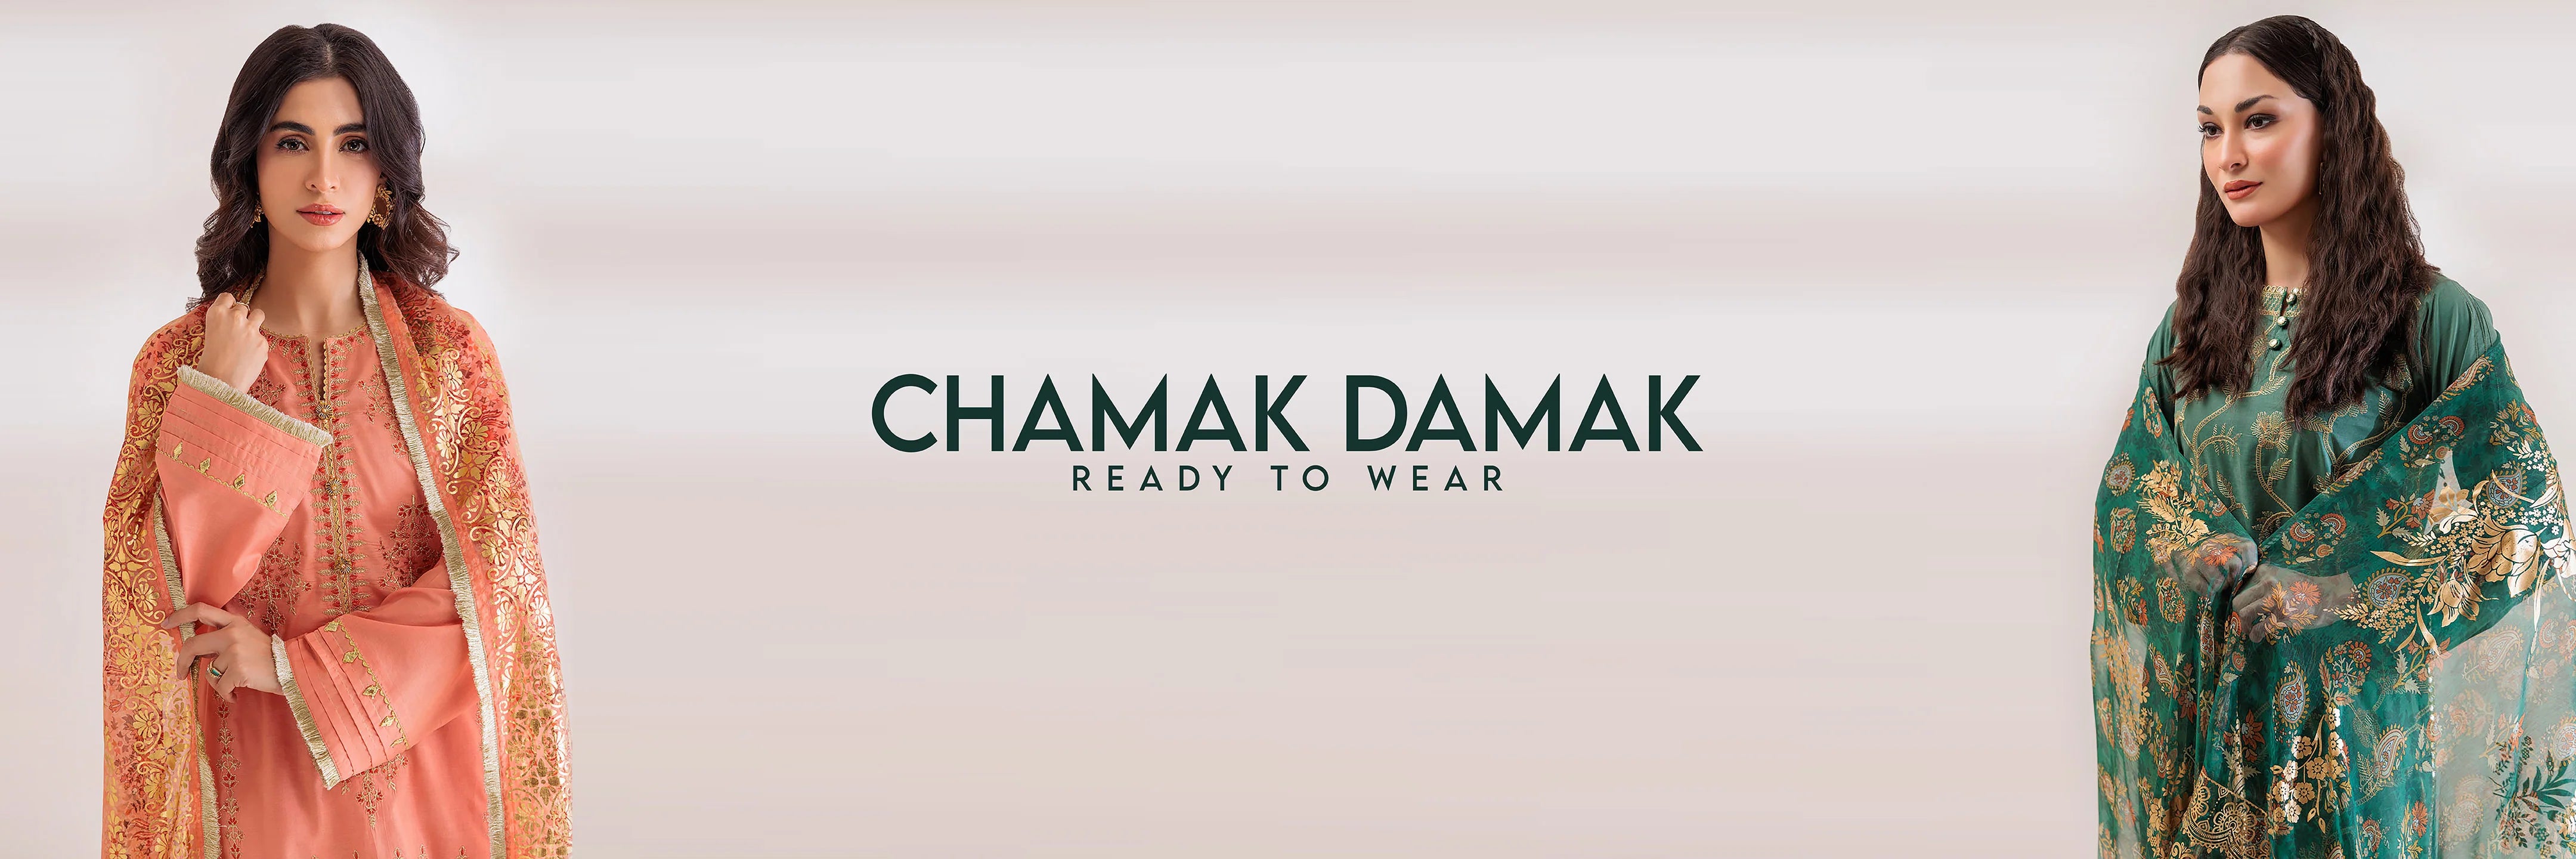 READY TO WEAR | LUXURY COLLECTION | Chamak Damak'24